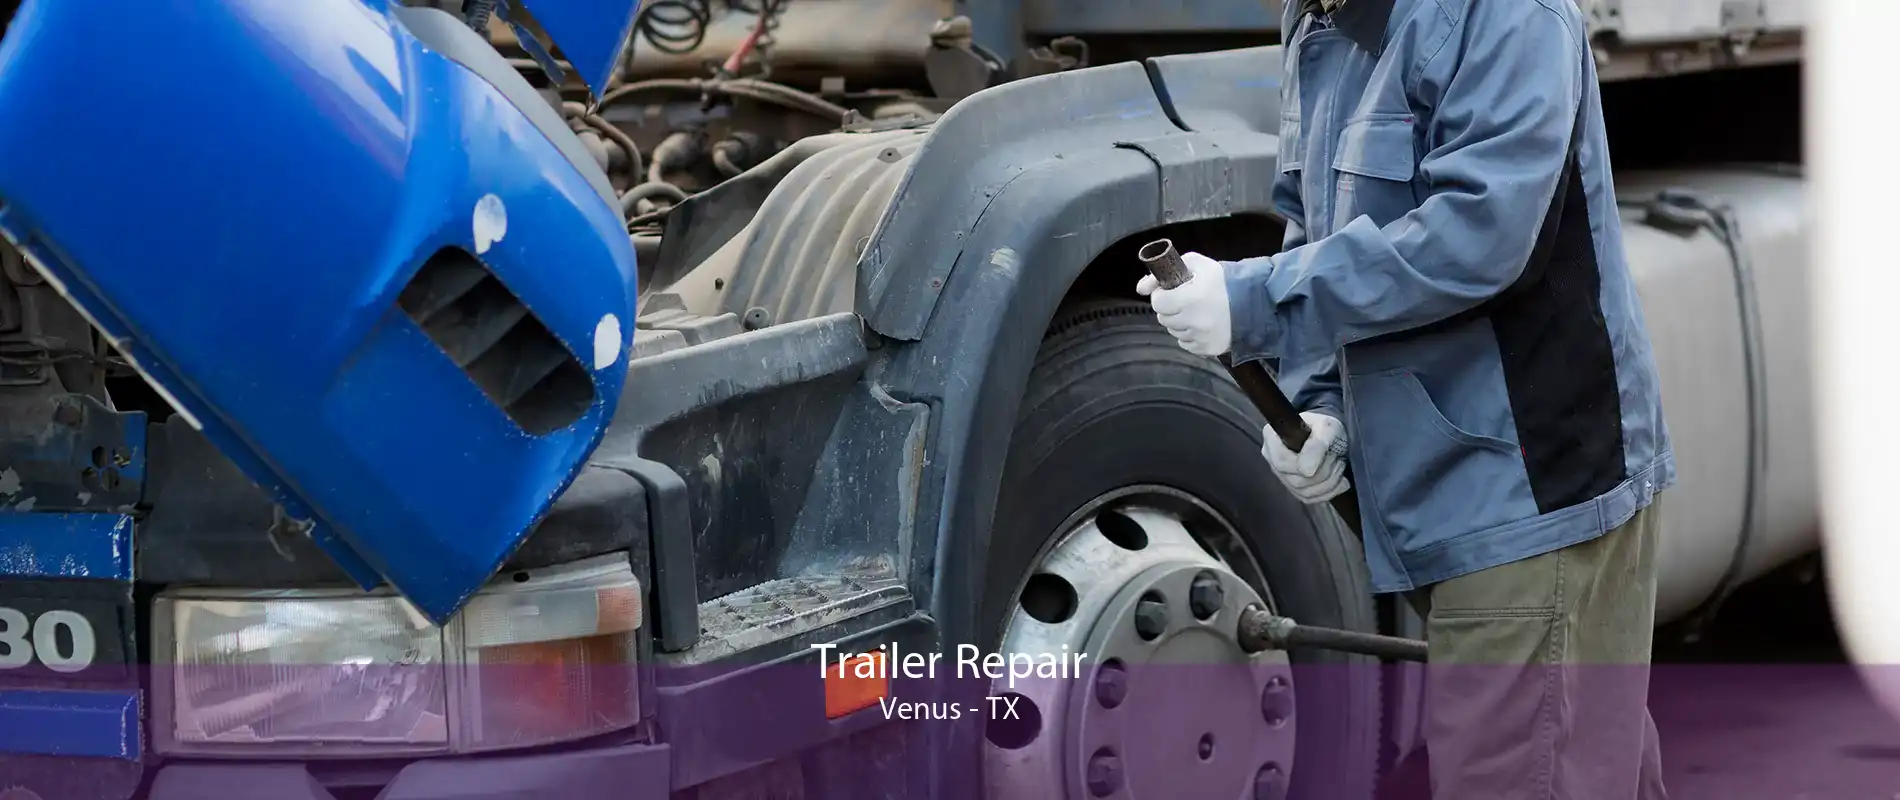 Trailer Repair Venus - TX